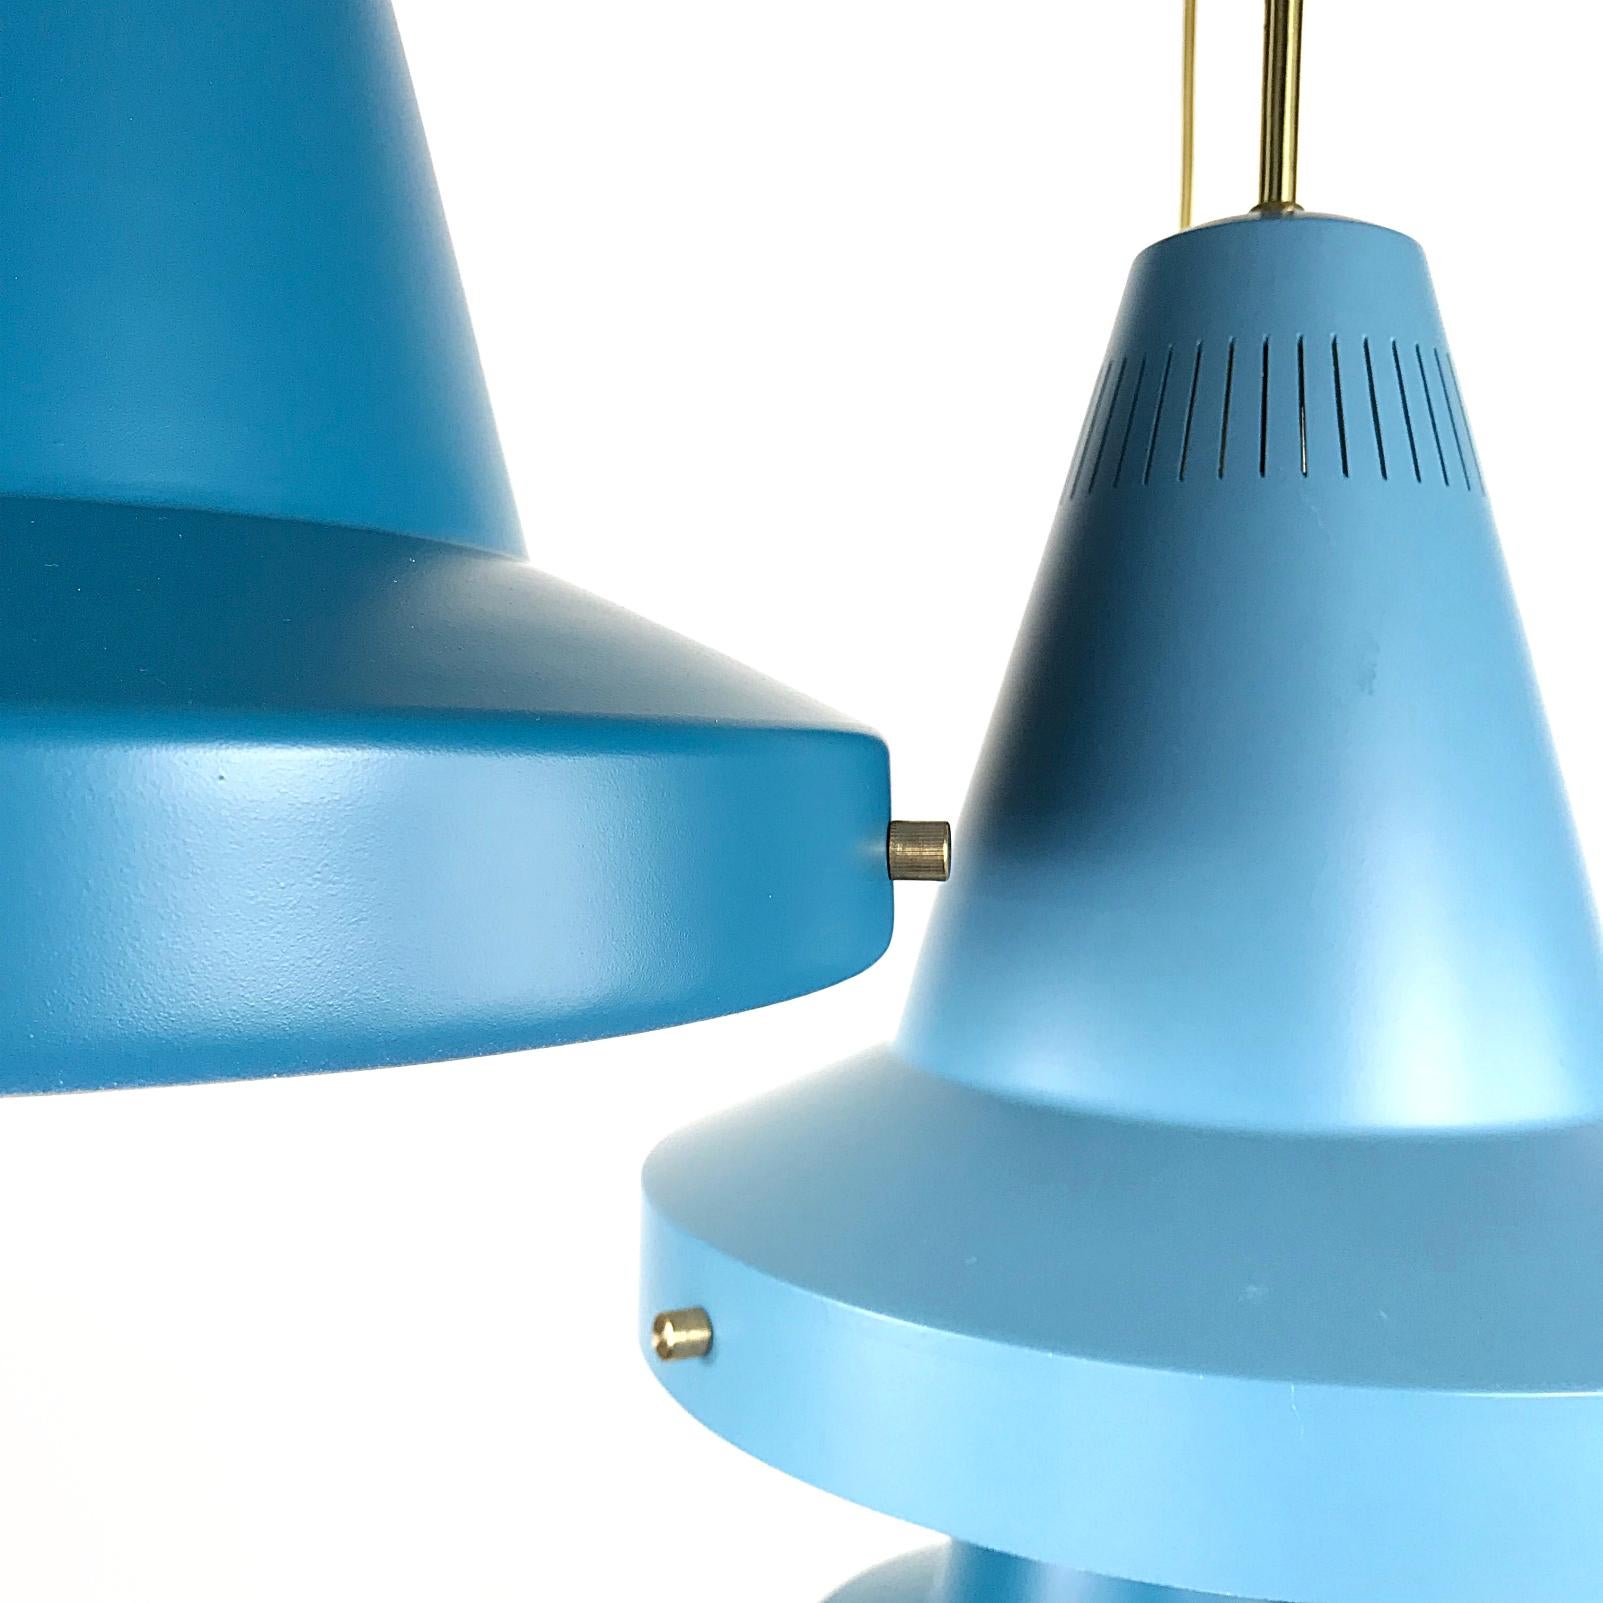 Schöne Mid-Century Modern Deckenlampen. Die beiden hellblauen Lampen sind von Stilnovo beschriftet. Die Lampen sind etwas unterschiedlich gefärbt - zwei von ihnen sind hellblau, die anderen beiden sind dunkler. Diese Lampe ist eine auffällige